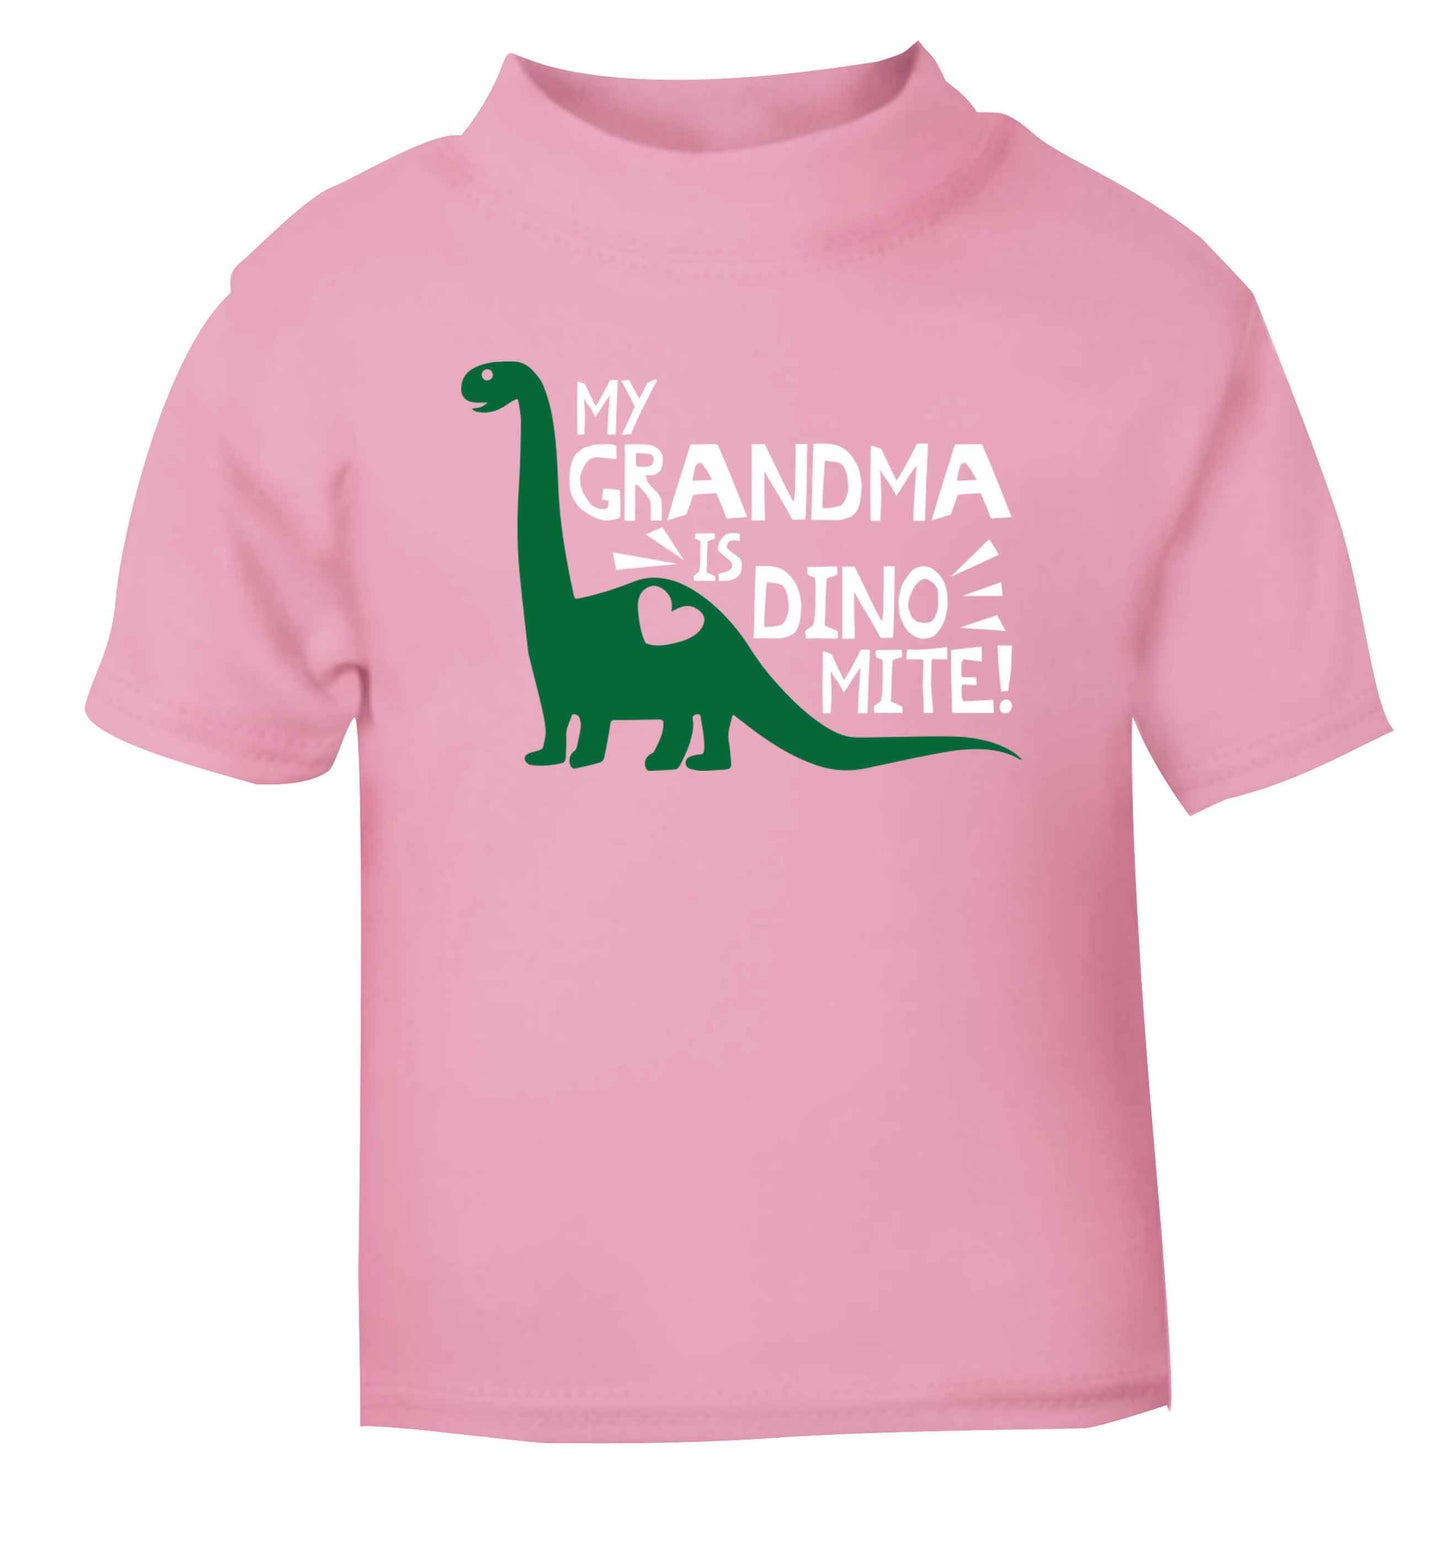 My grandma is dinomite! light pink Baby Toddler Tshirt 2 Years